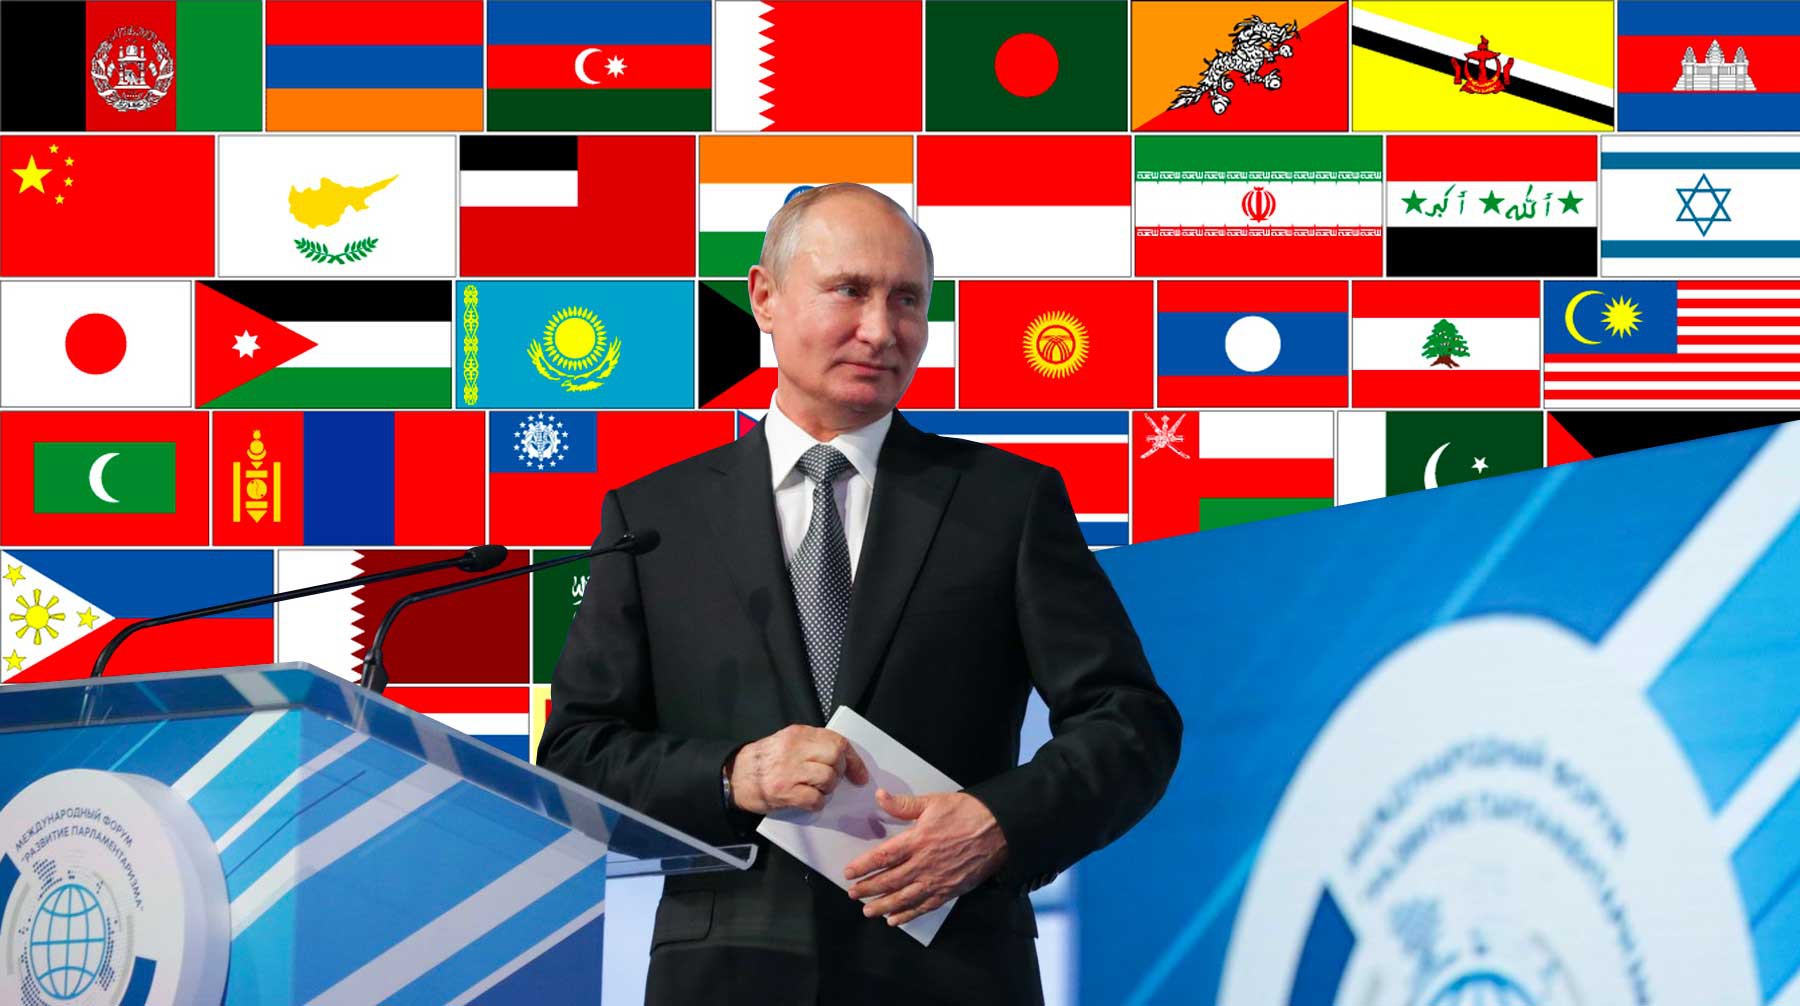 Dailystorm - Миссия выполнима. Путин призвал парламентариев защитить планету от деградации и рисков